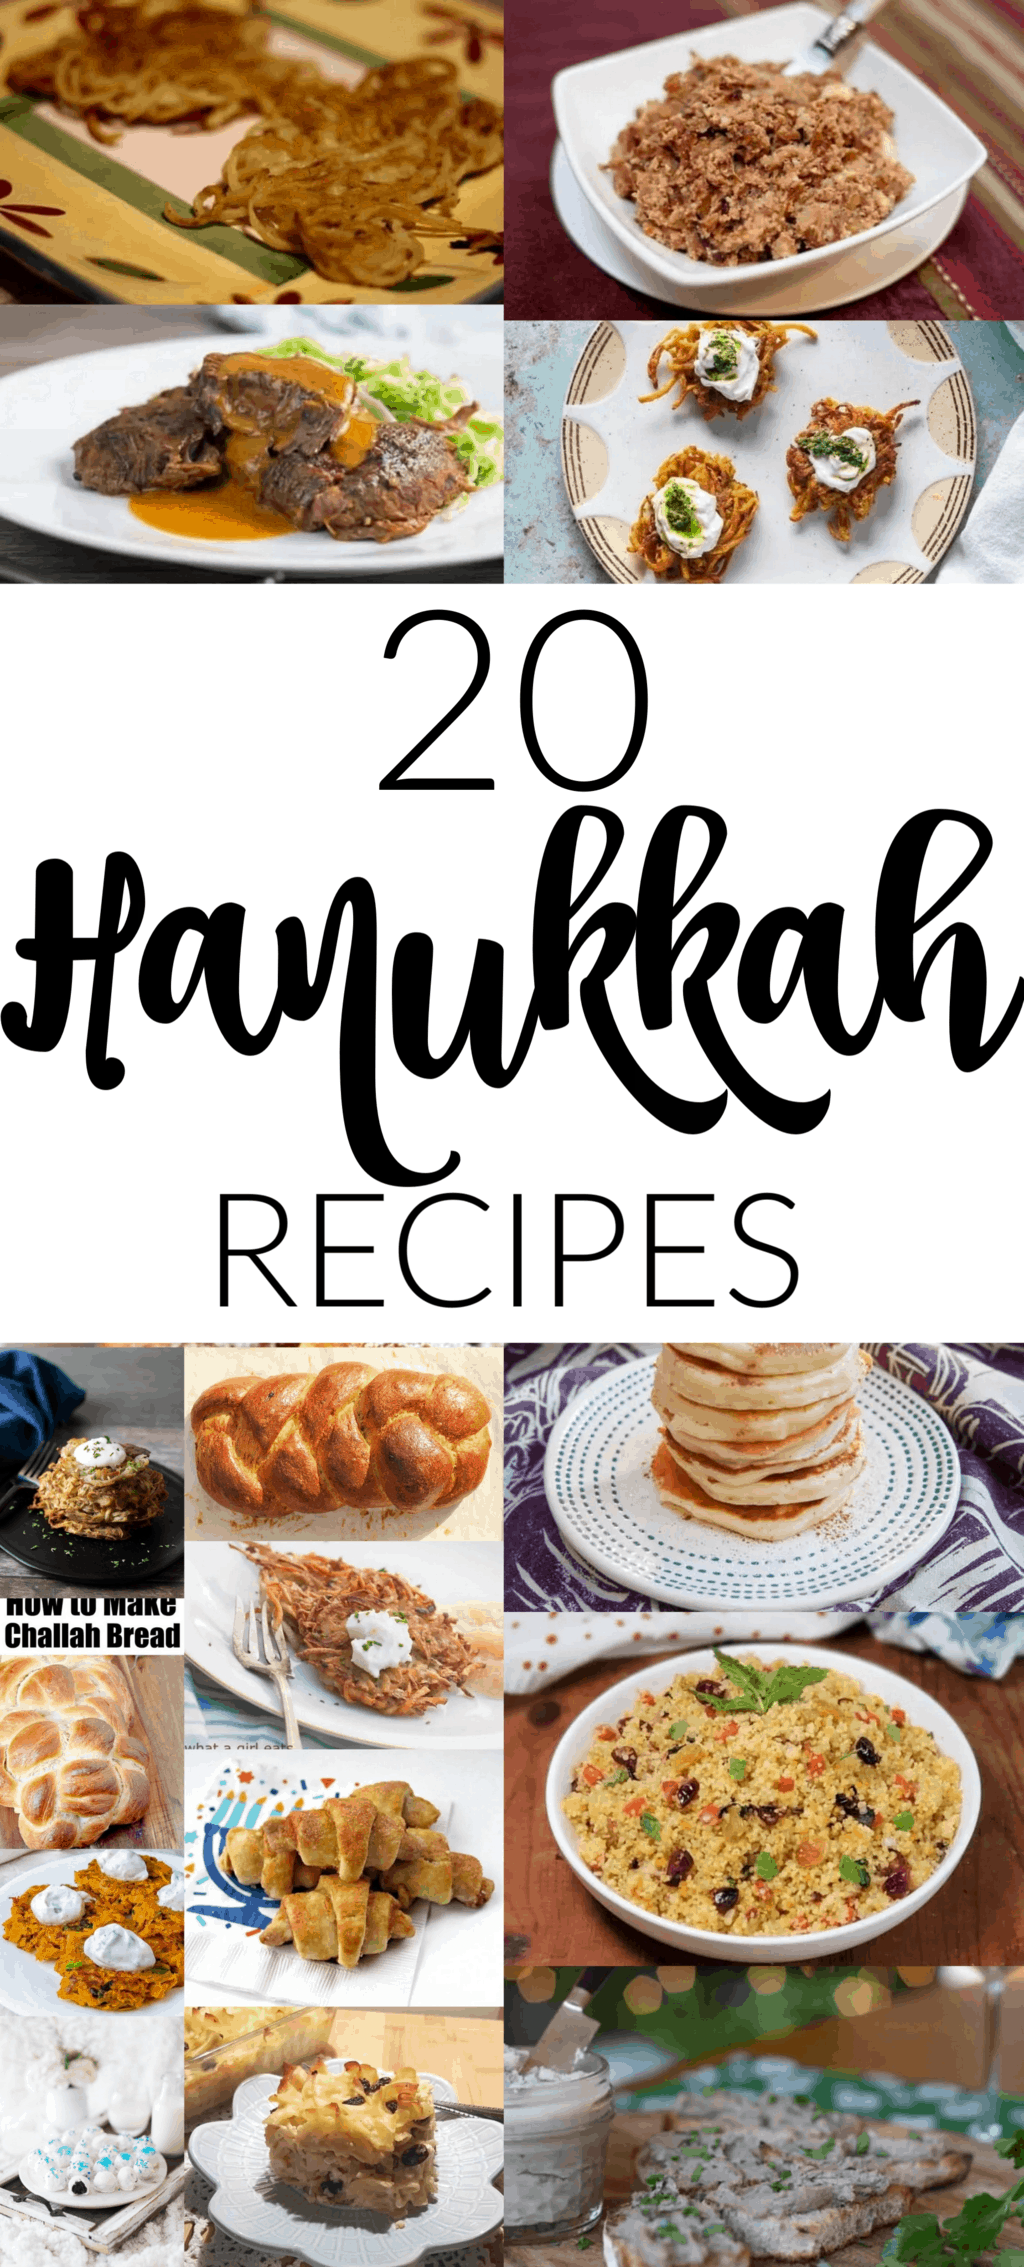 hanukkah menus and recipes